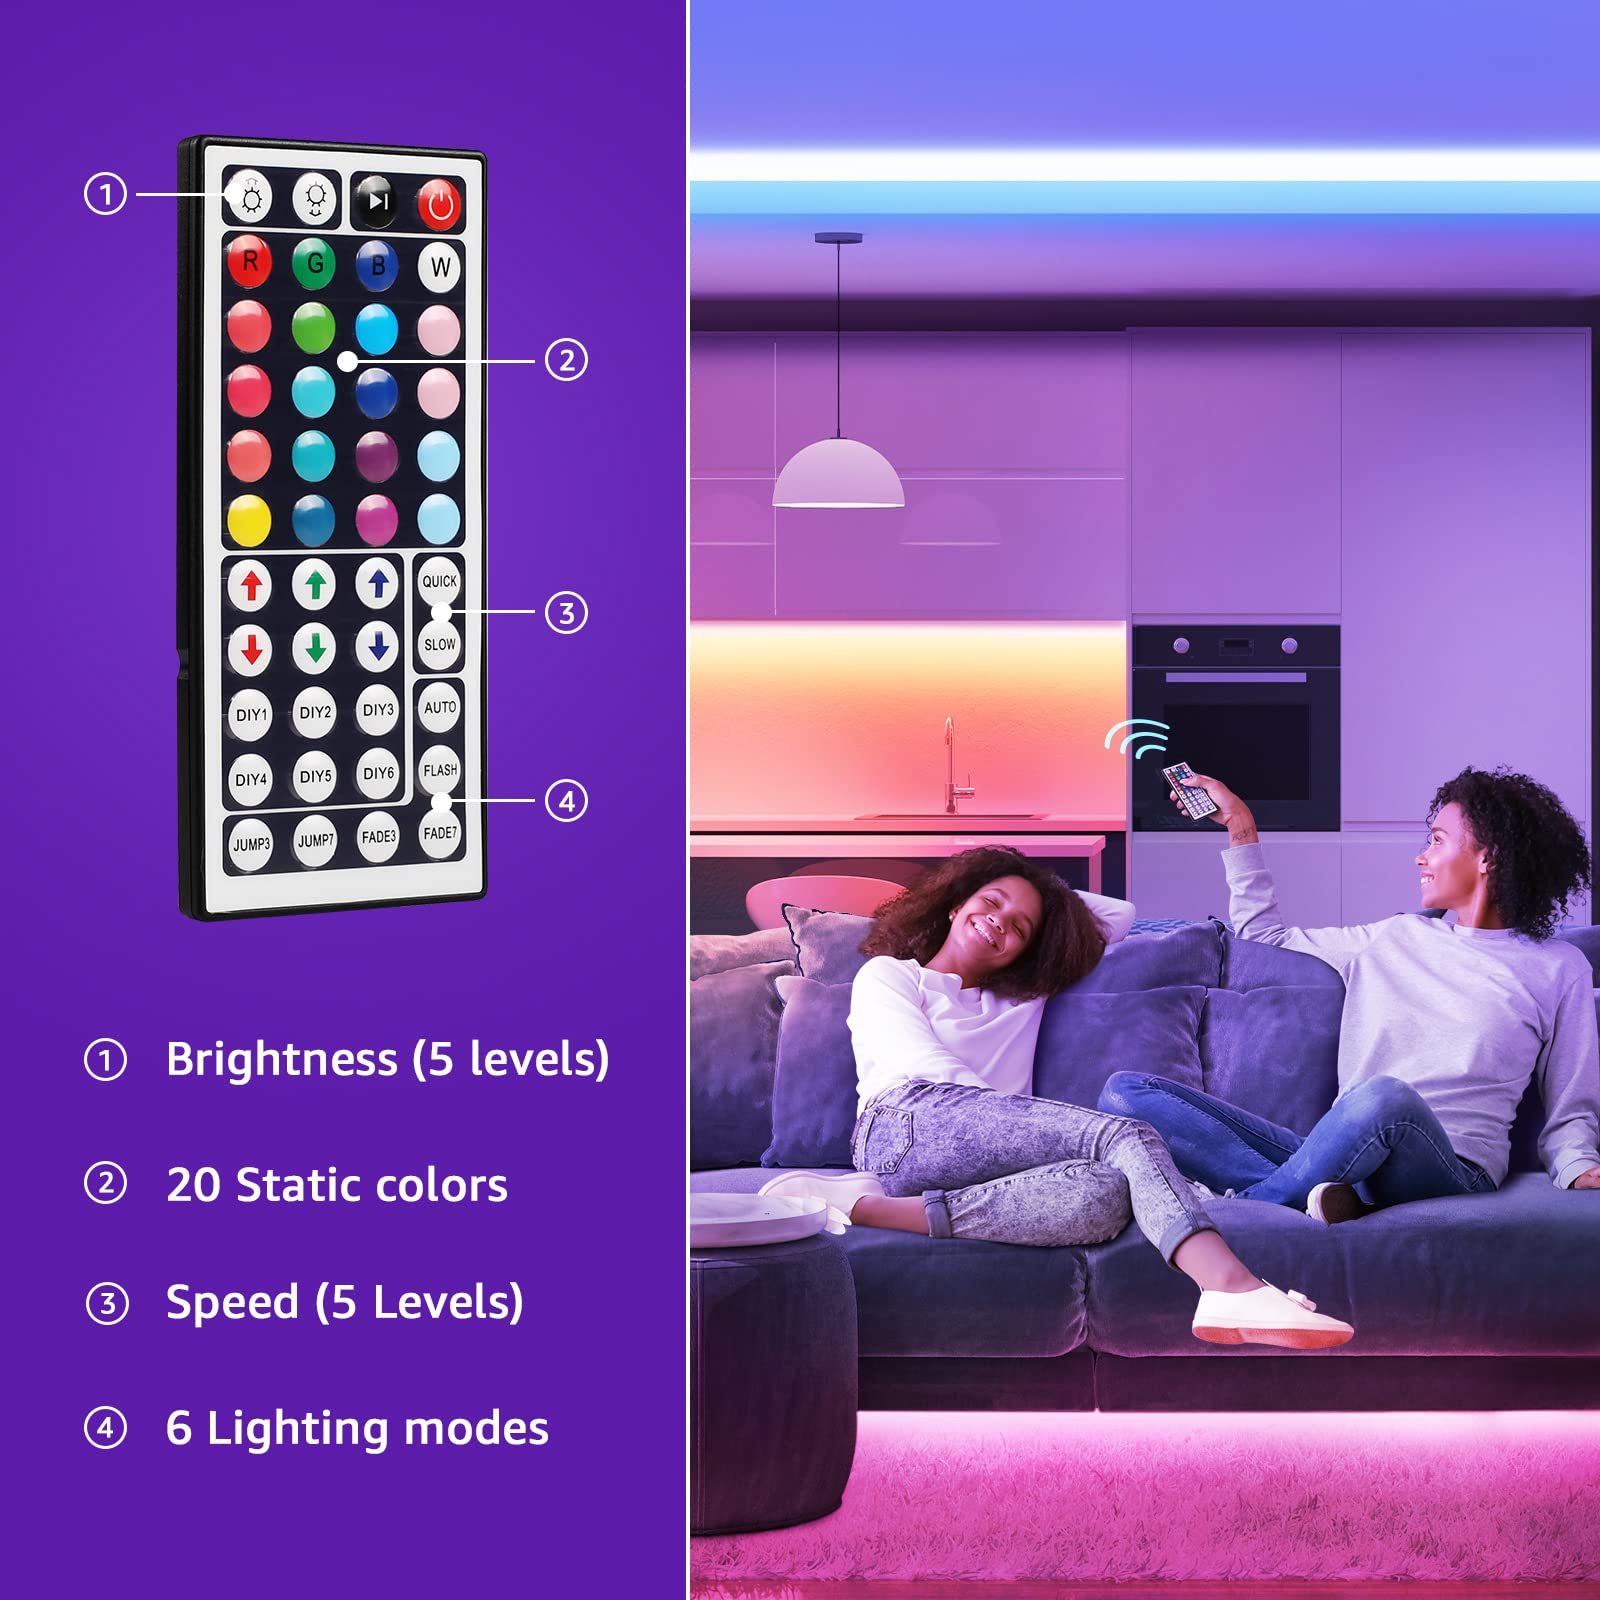 LED Strip Lights for Bedroom LED TV Backlight Bluetooth Remote Neon Lights Color RGB5050 LED Tape Christmas Decoration Luces LED